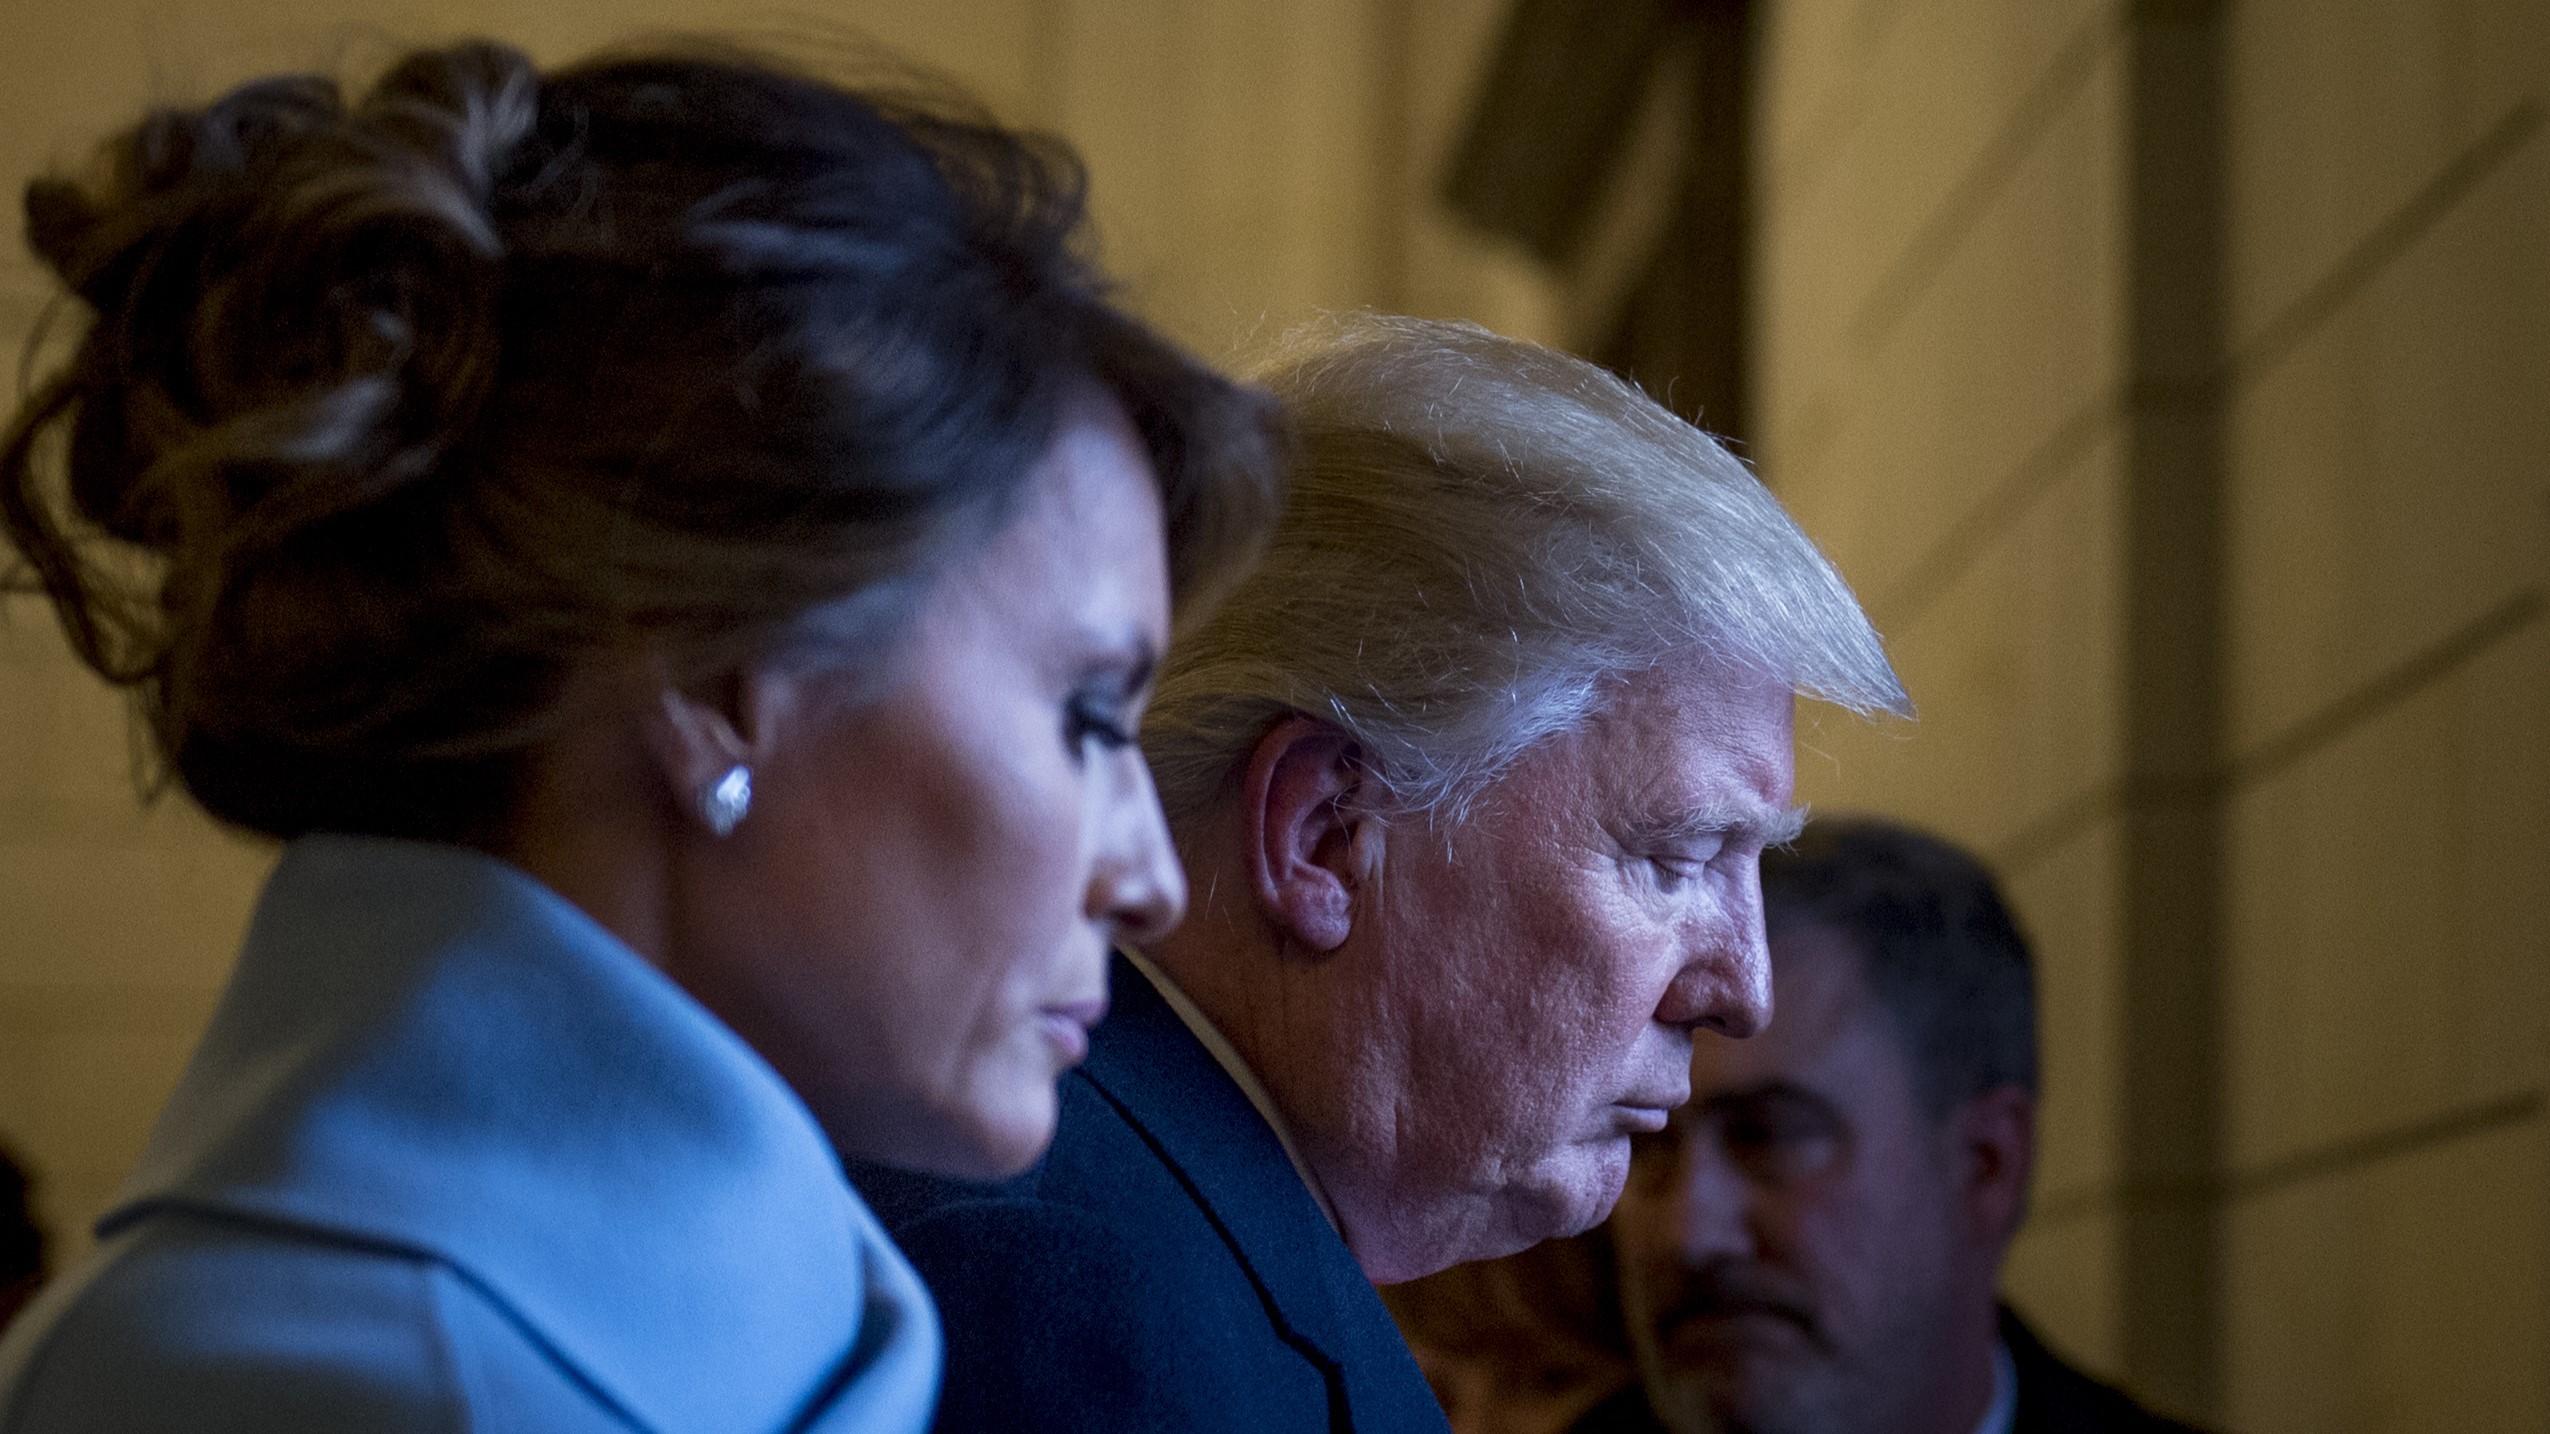 Melania Trump opazno odsotna v času moževih sodnih težav